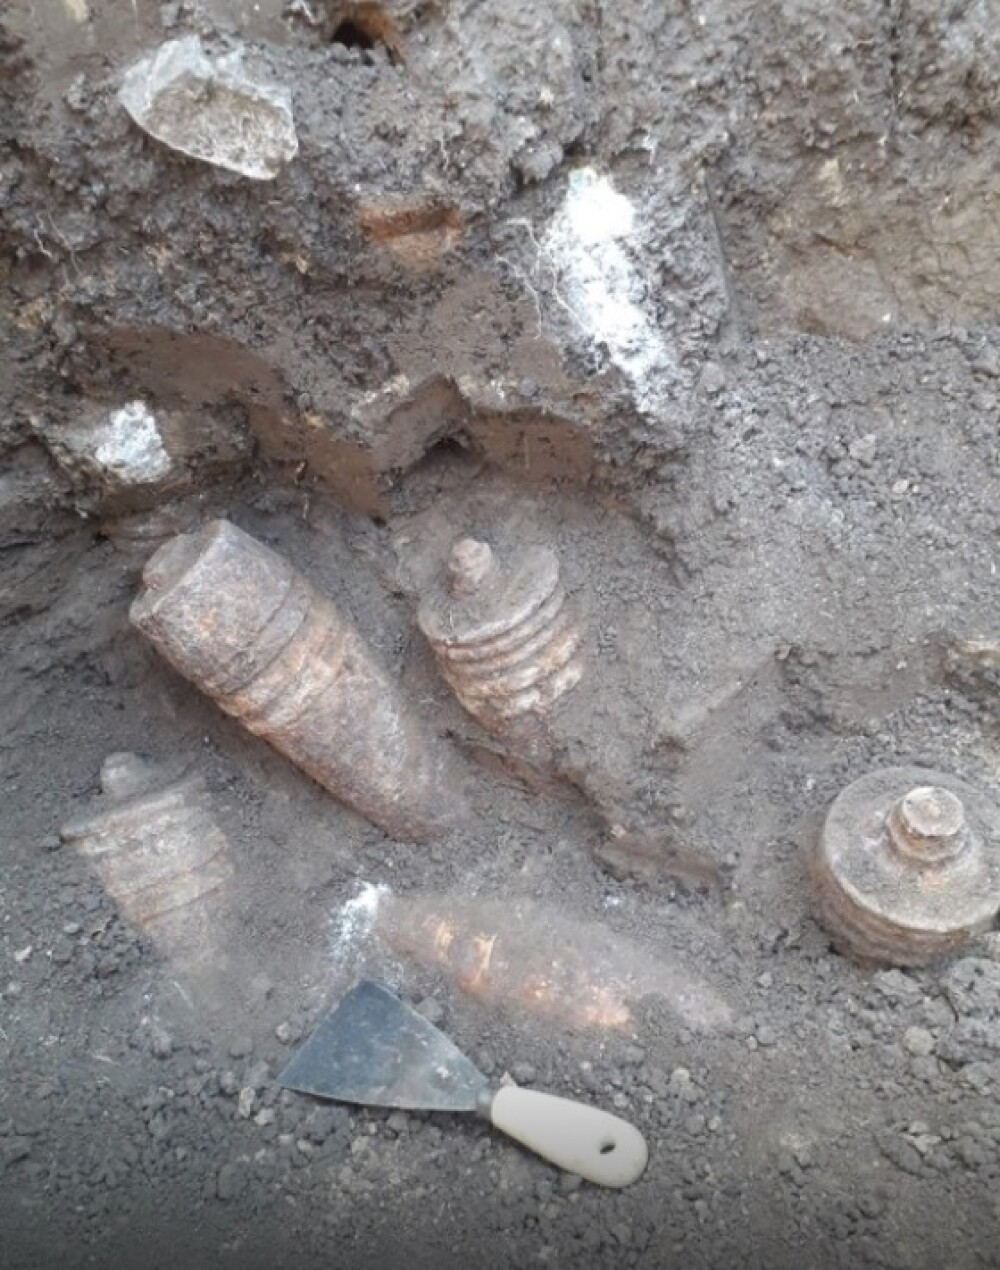 Zeci de proiectile, gloanţe şi cartuşe, descoperite în cimitirul din Bârlad. De unde provin - Imaginea 3